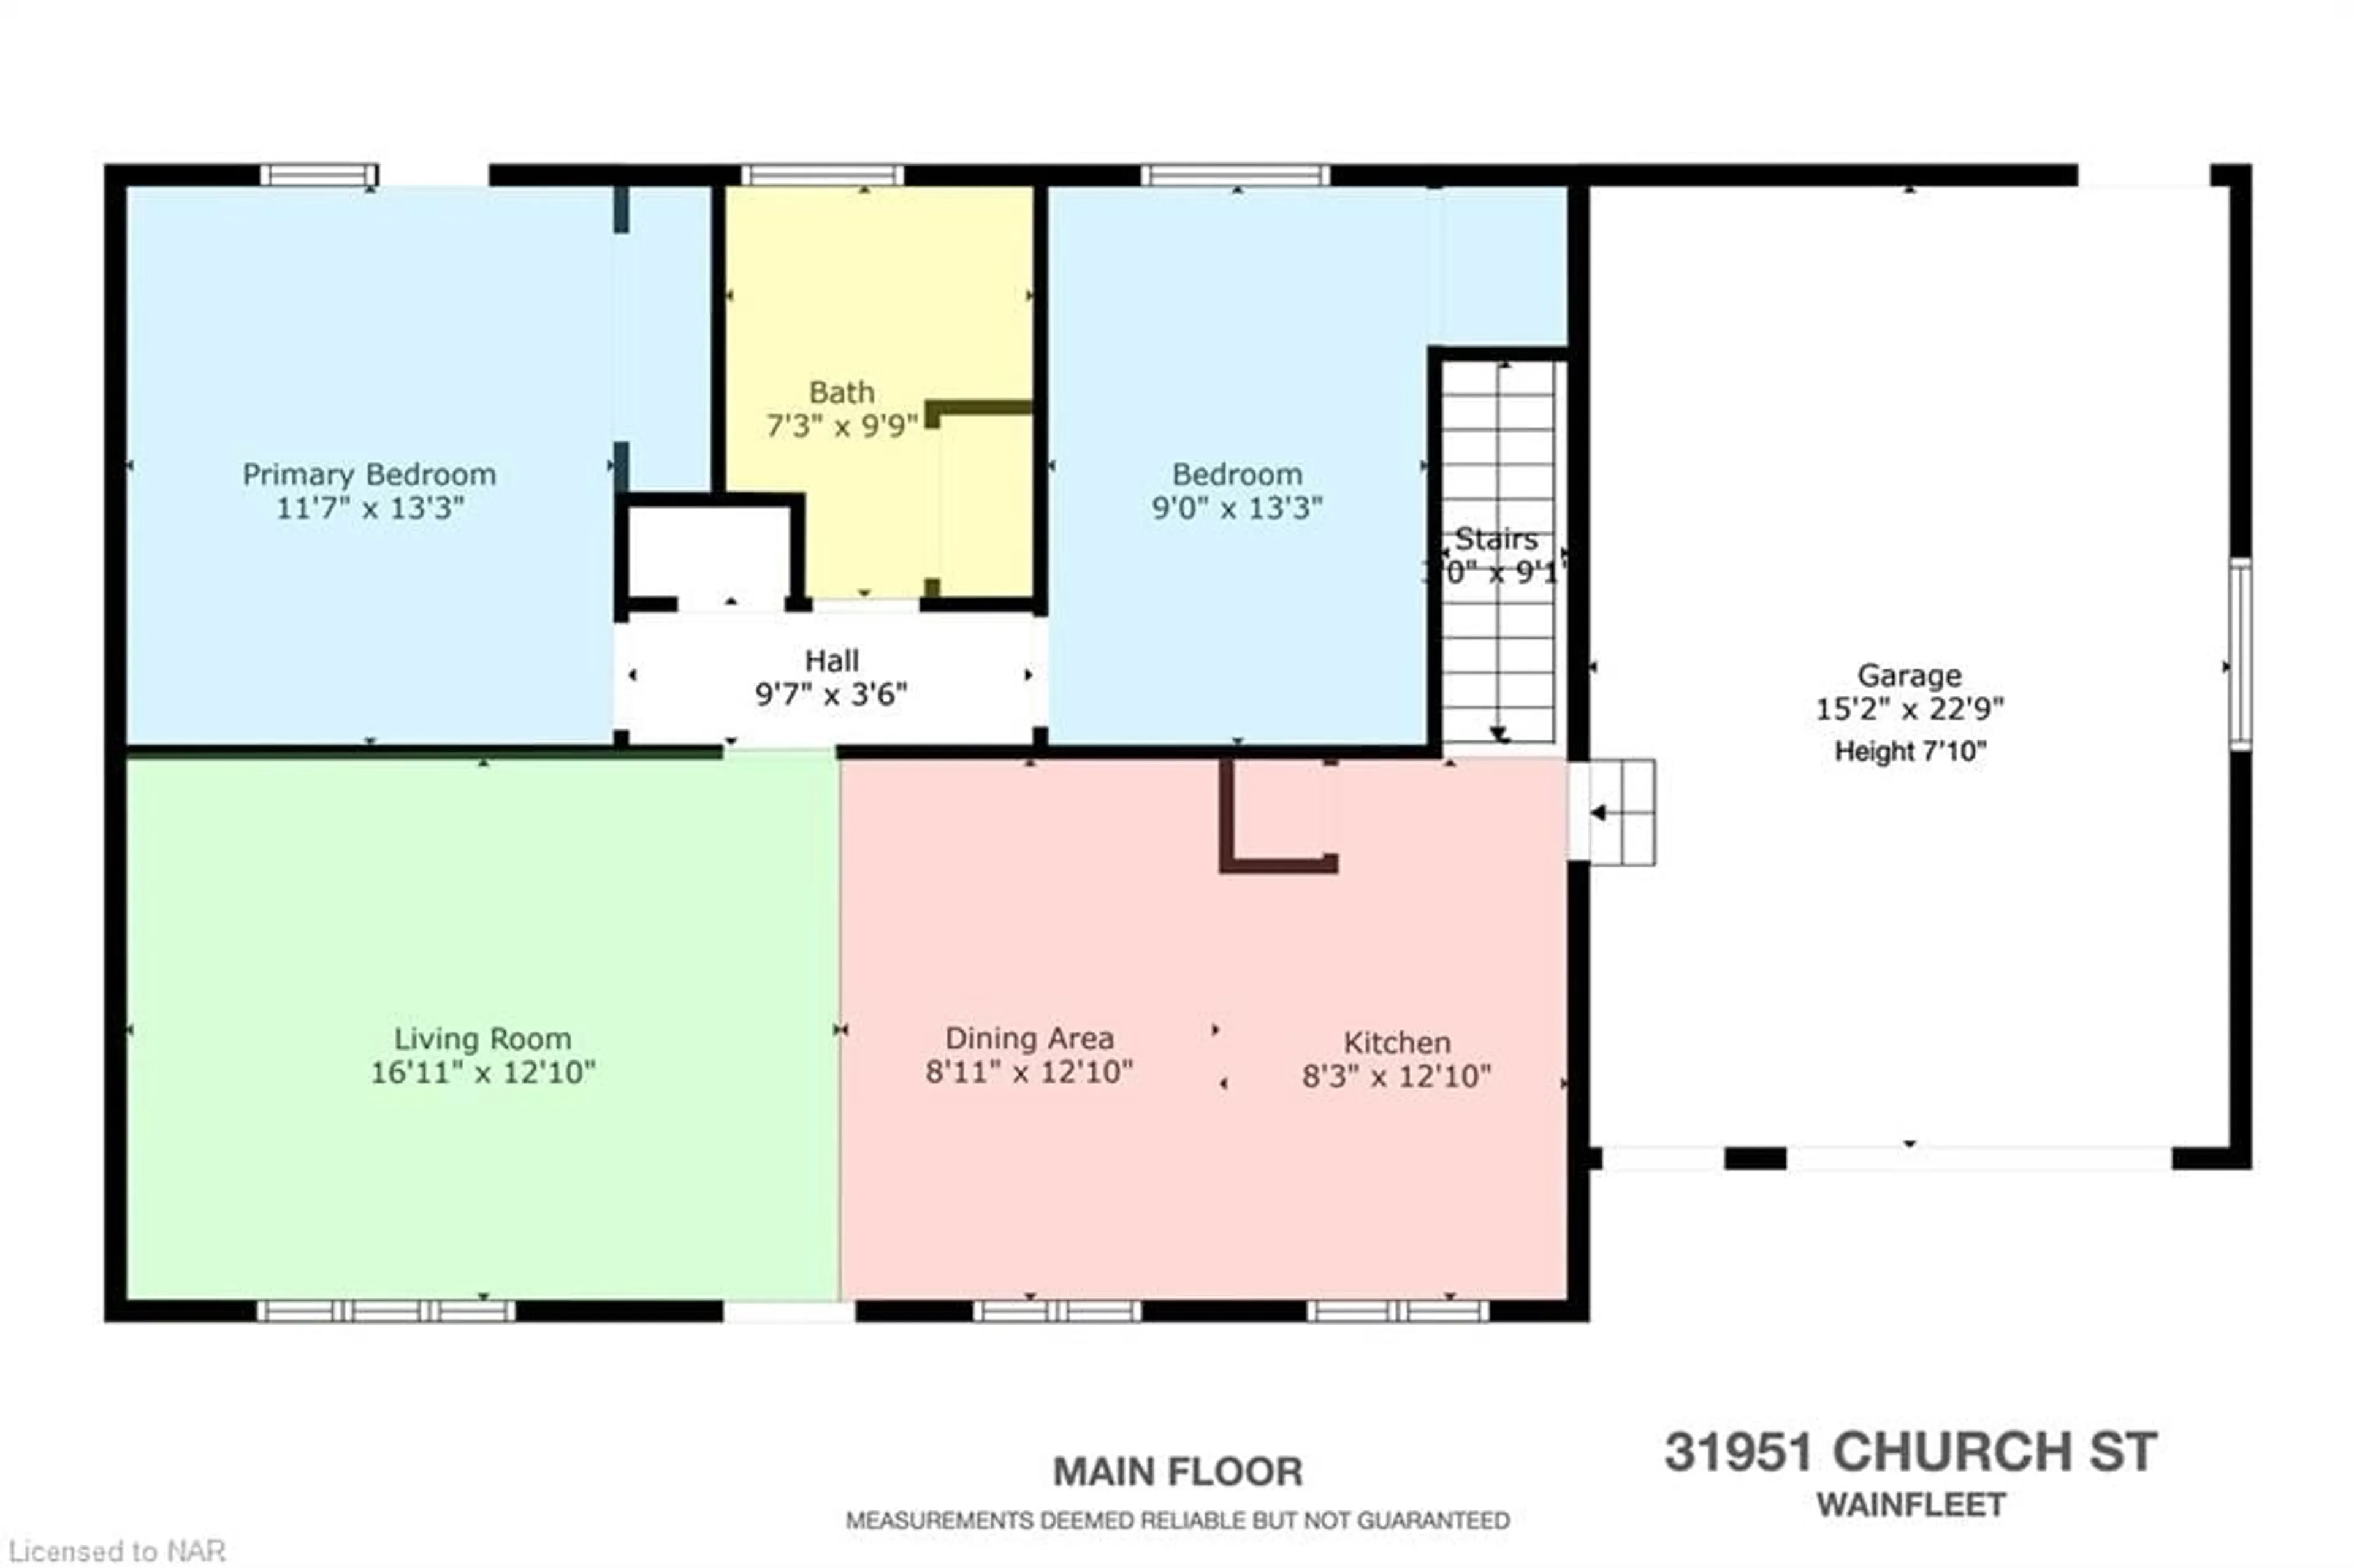 Floor plan for 31951 Church St, Wainfleet Ontario L0S 1V0